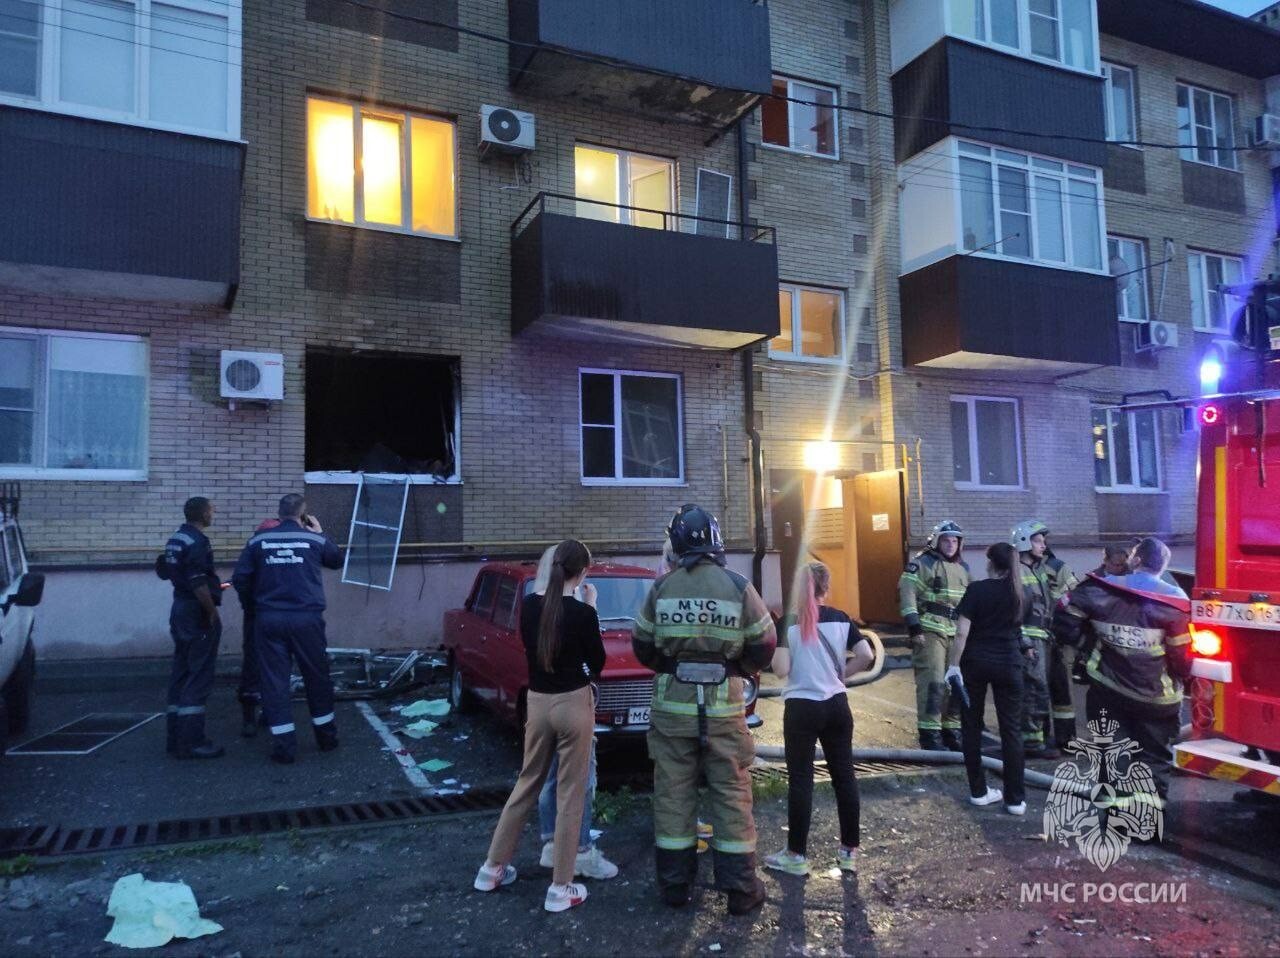 Возгорание произошло в жилом доме в Ростове-на-Дону после хлопка баллона с бытовым газом - МЧС